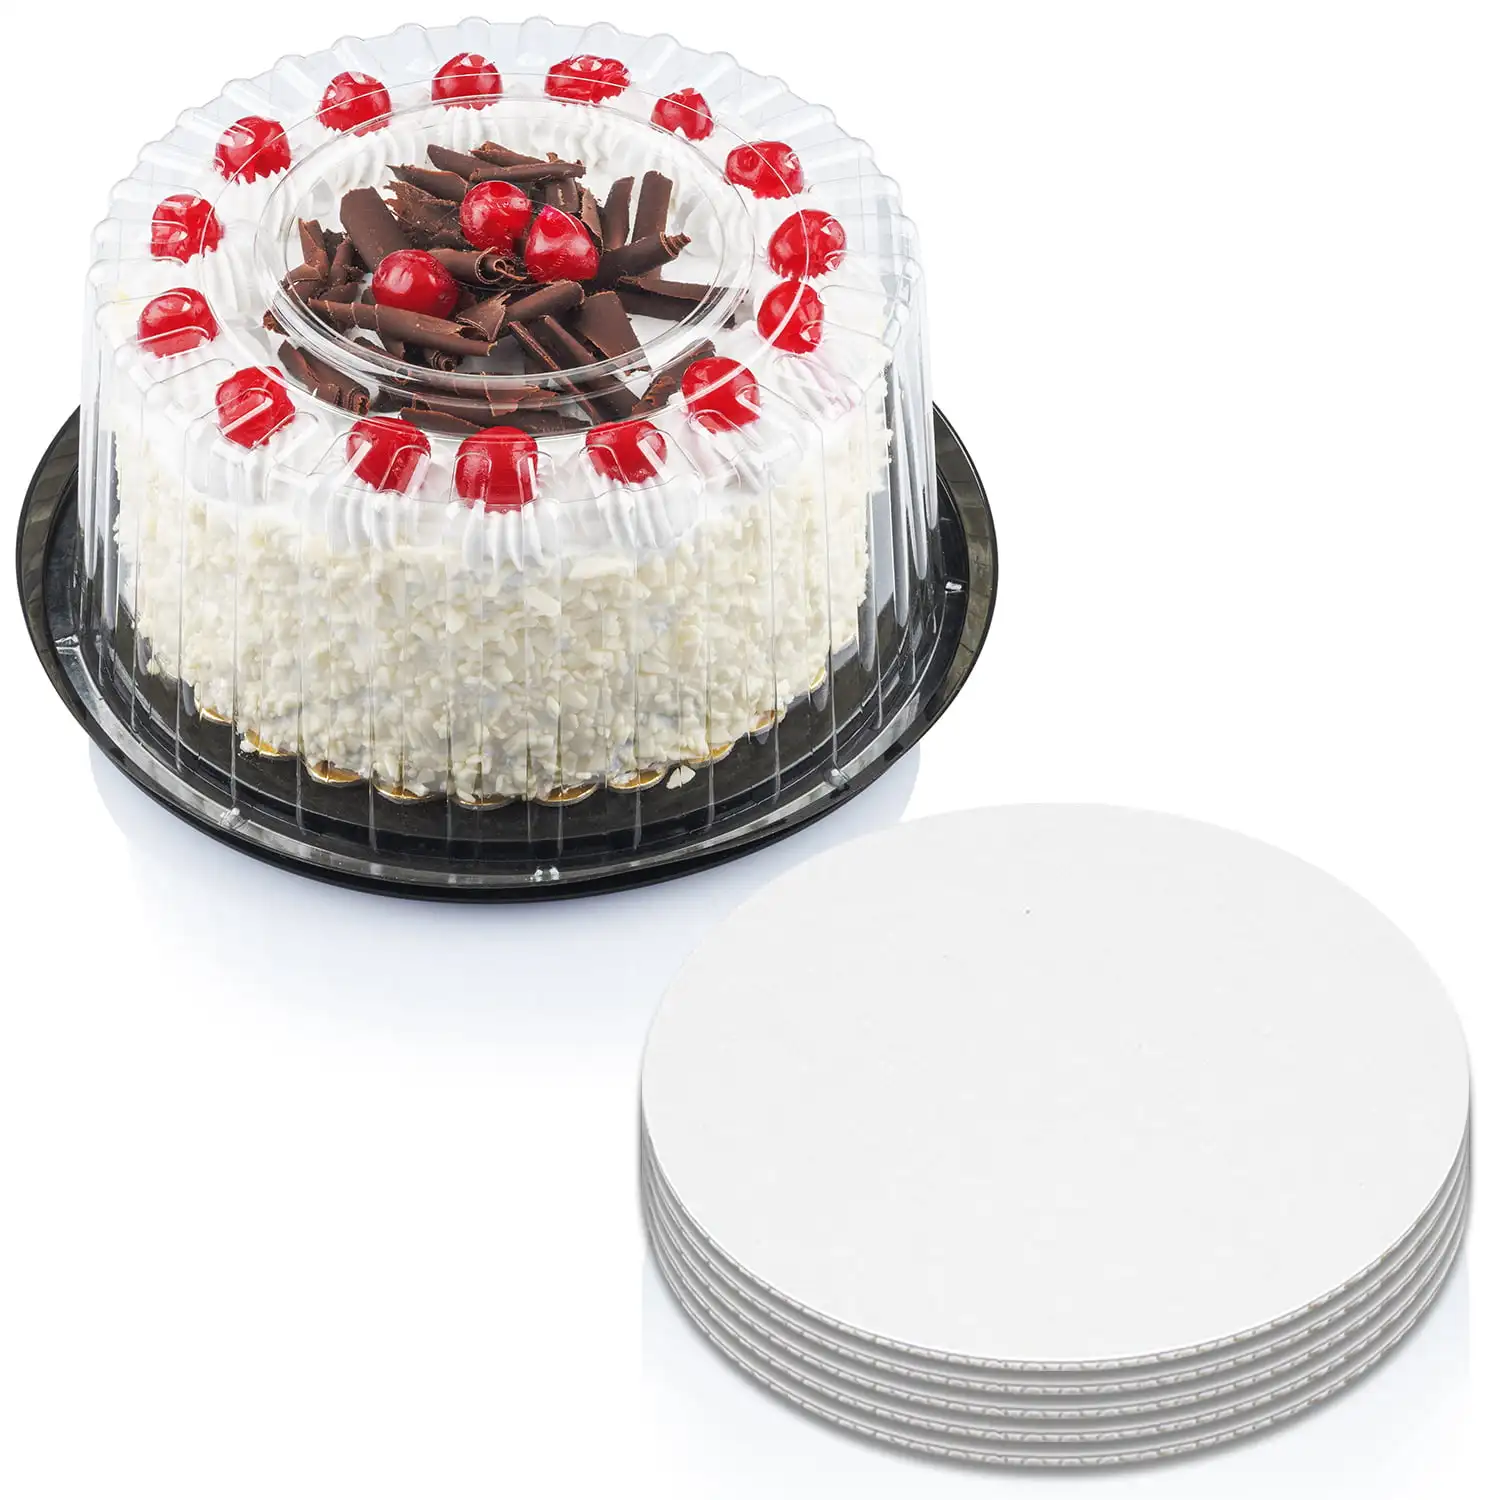 

Пластиковый контейнер для пирожных с прозрачной купольной крышкой 9 дюймов и досками для тортов 9 дюймов, держатель для тортов с крышкой предназначен для тортов 2-3 слоев, кабан для торта